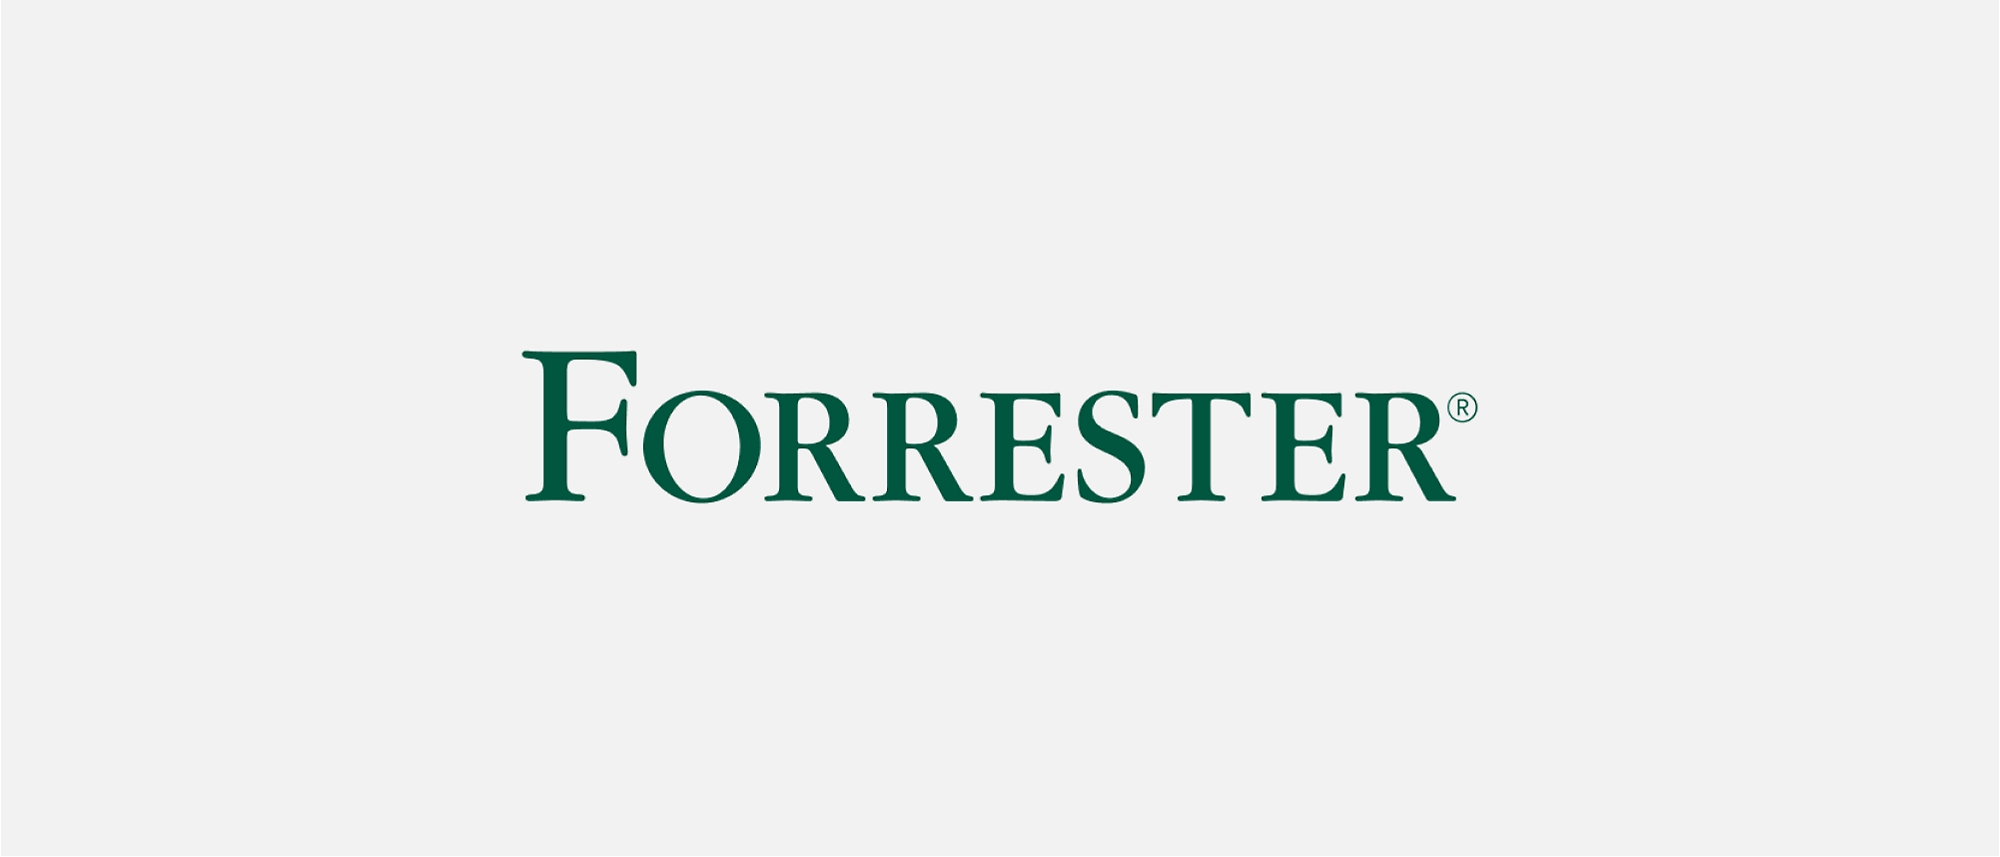 Logotipo da Forester